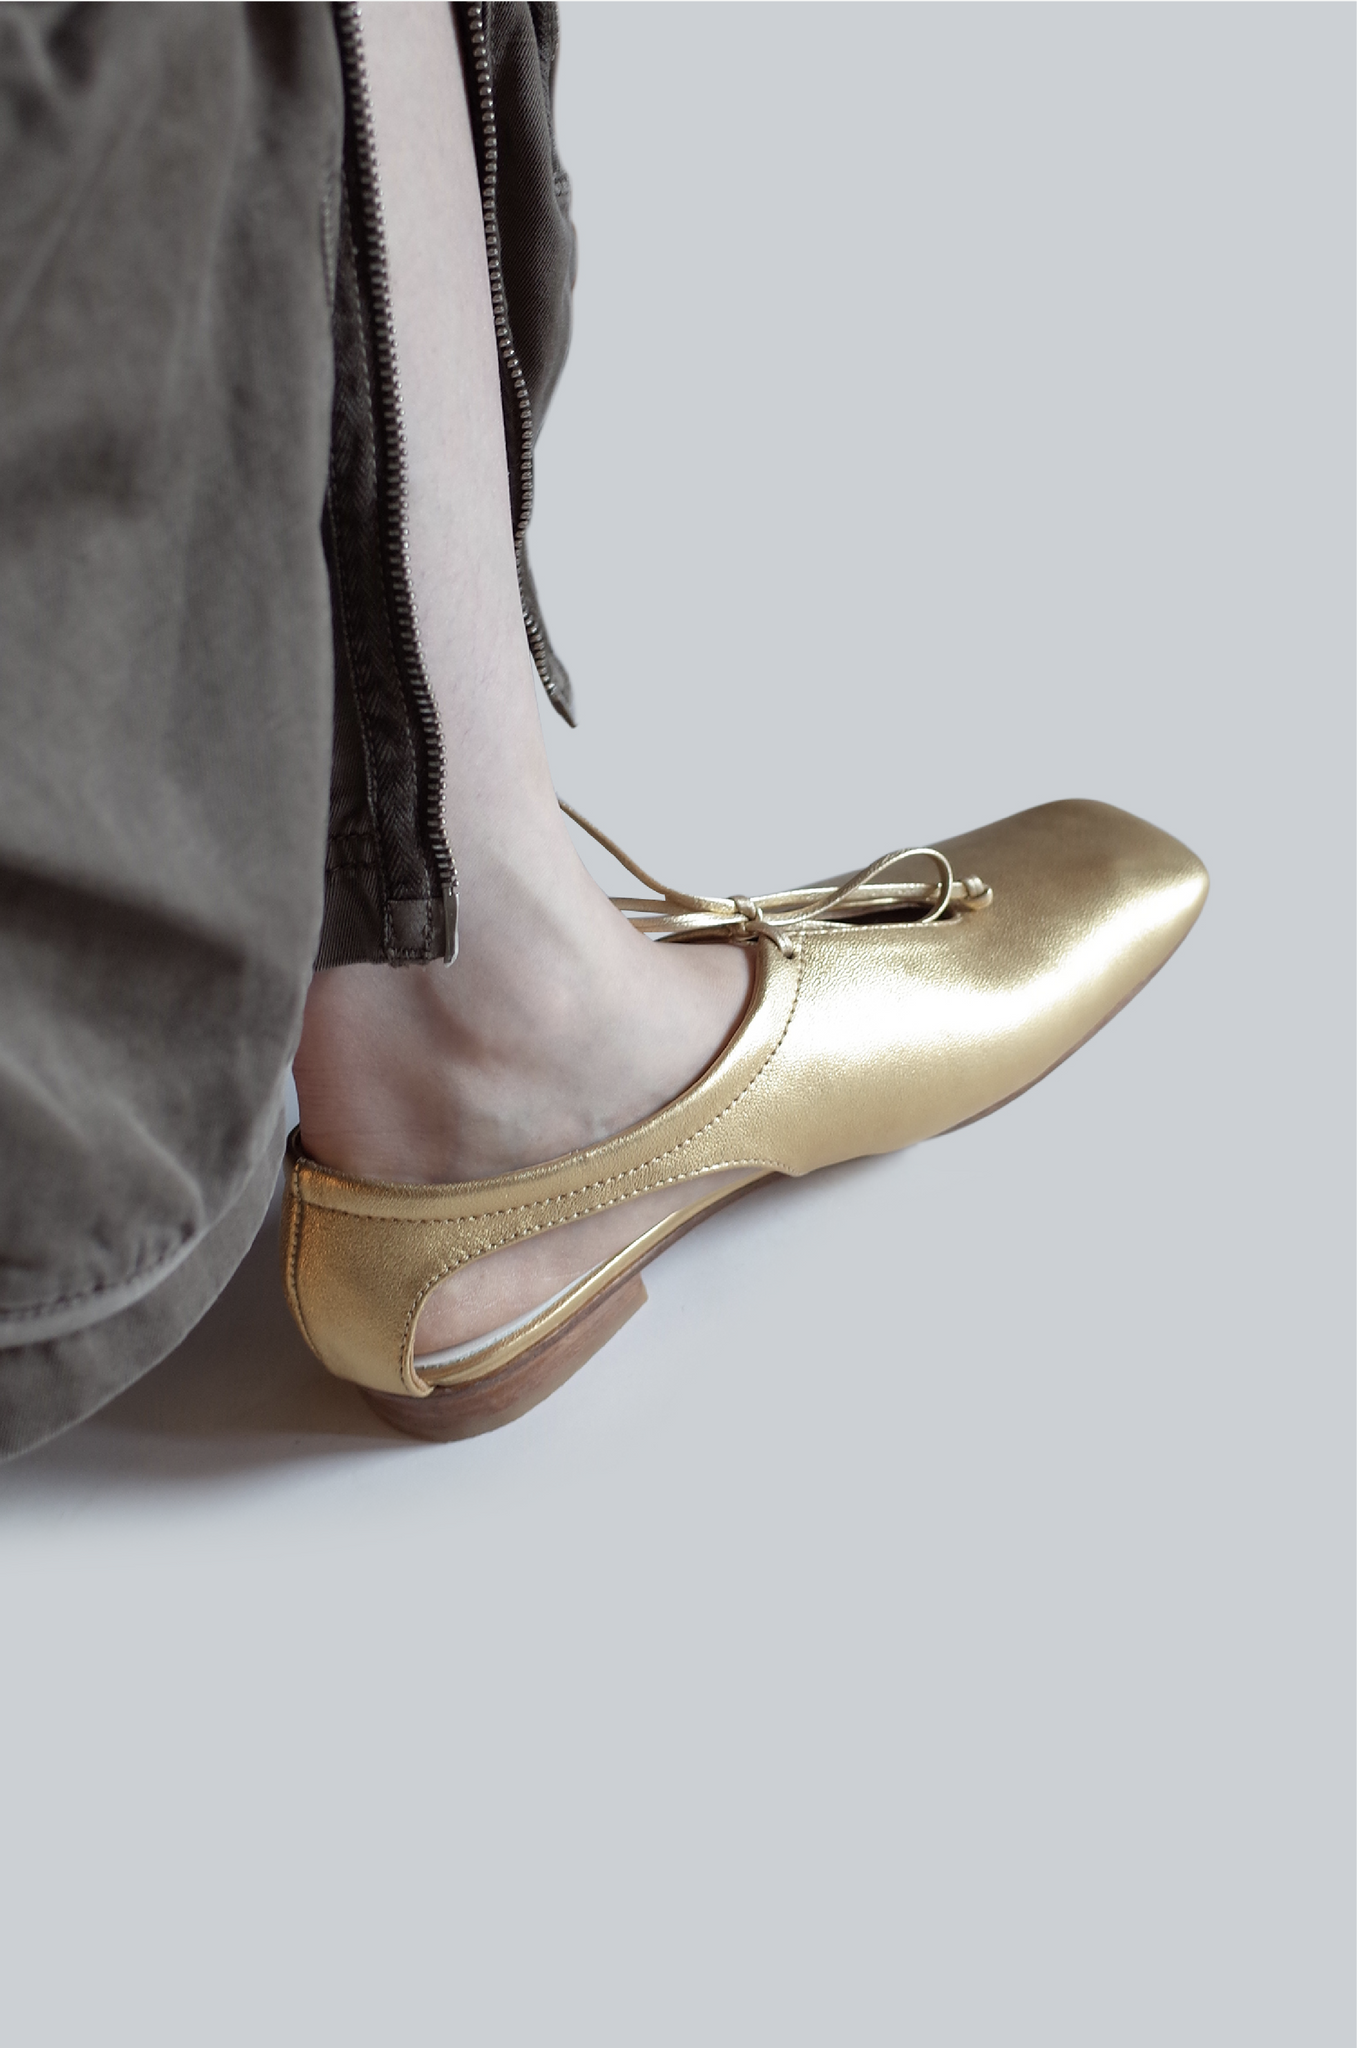 【在庫ある限り：Silverサイズ36,37残り1点,50%OFF】Craftsman Made Leather100% Flat Shoes (Silver&Gold)